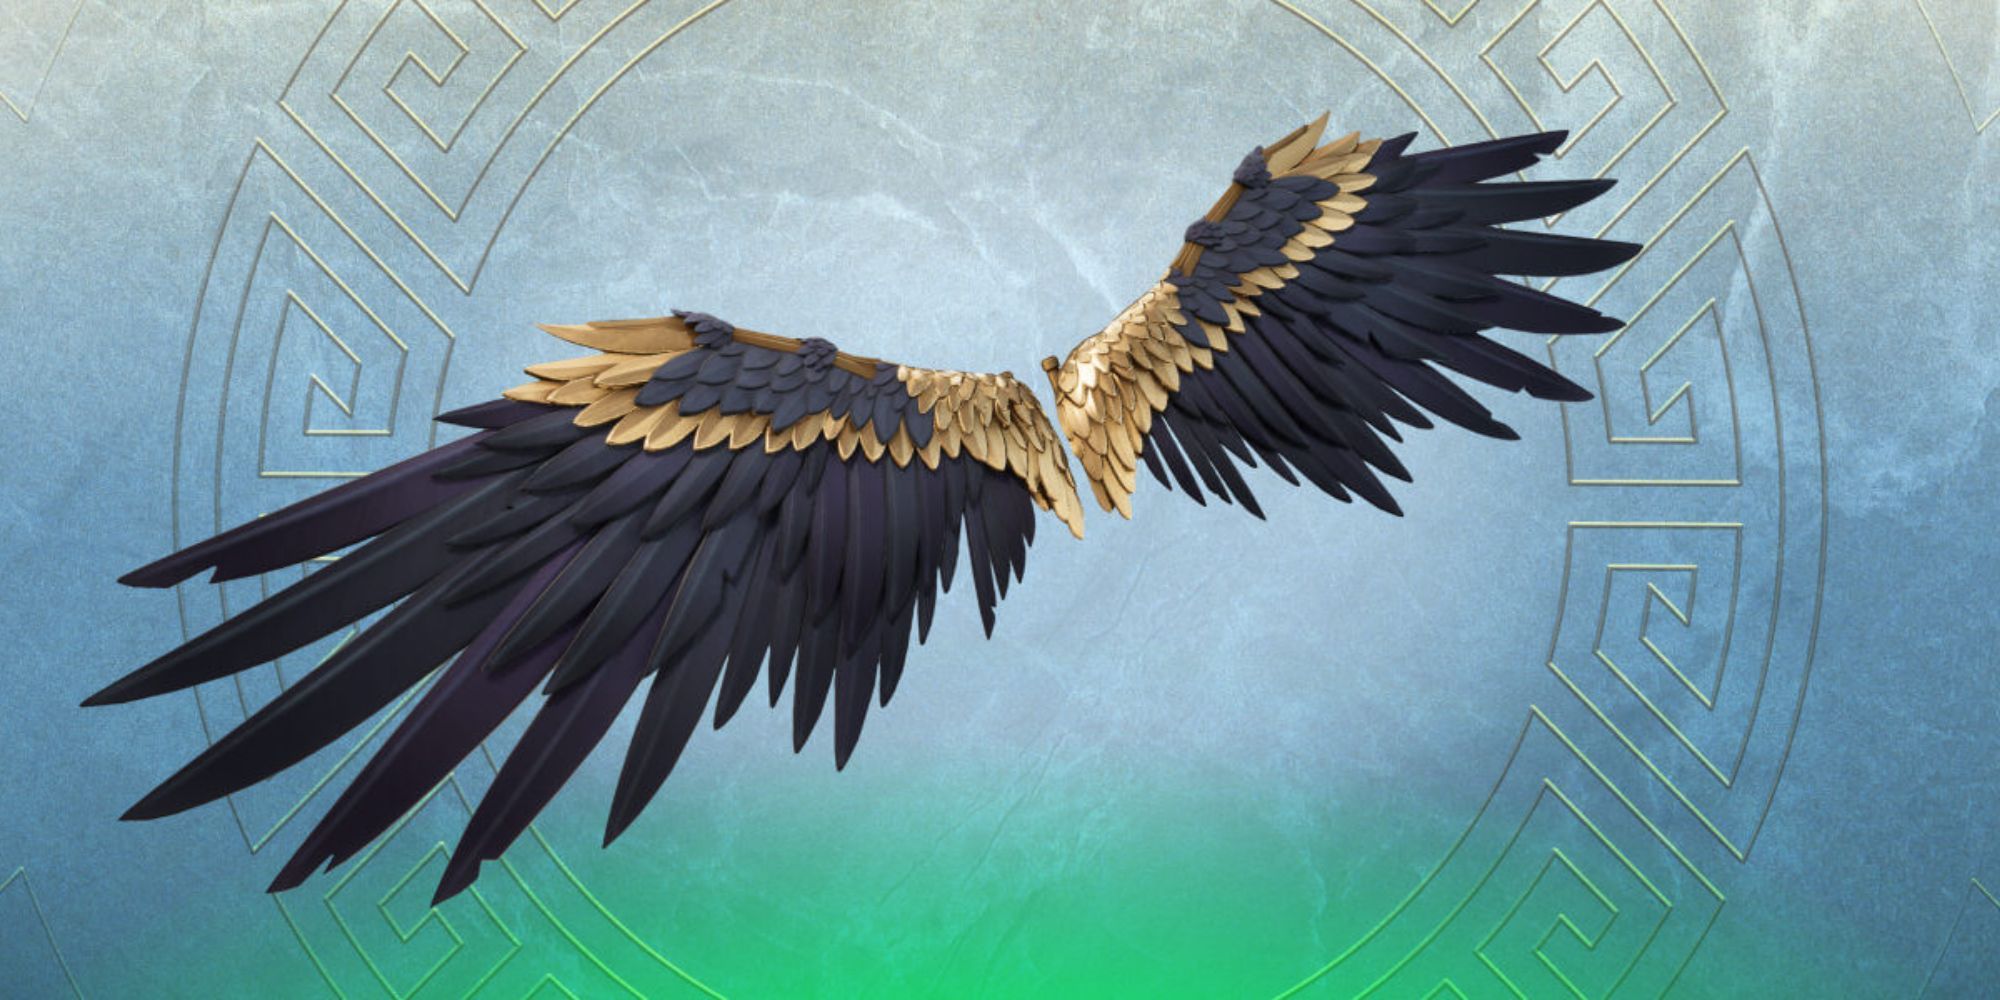 Icarus' Wings in Fortnite.